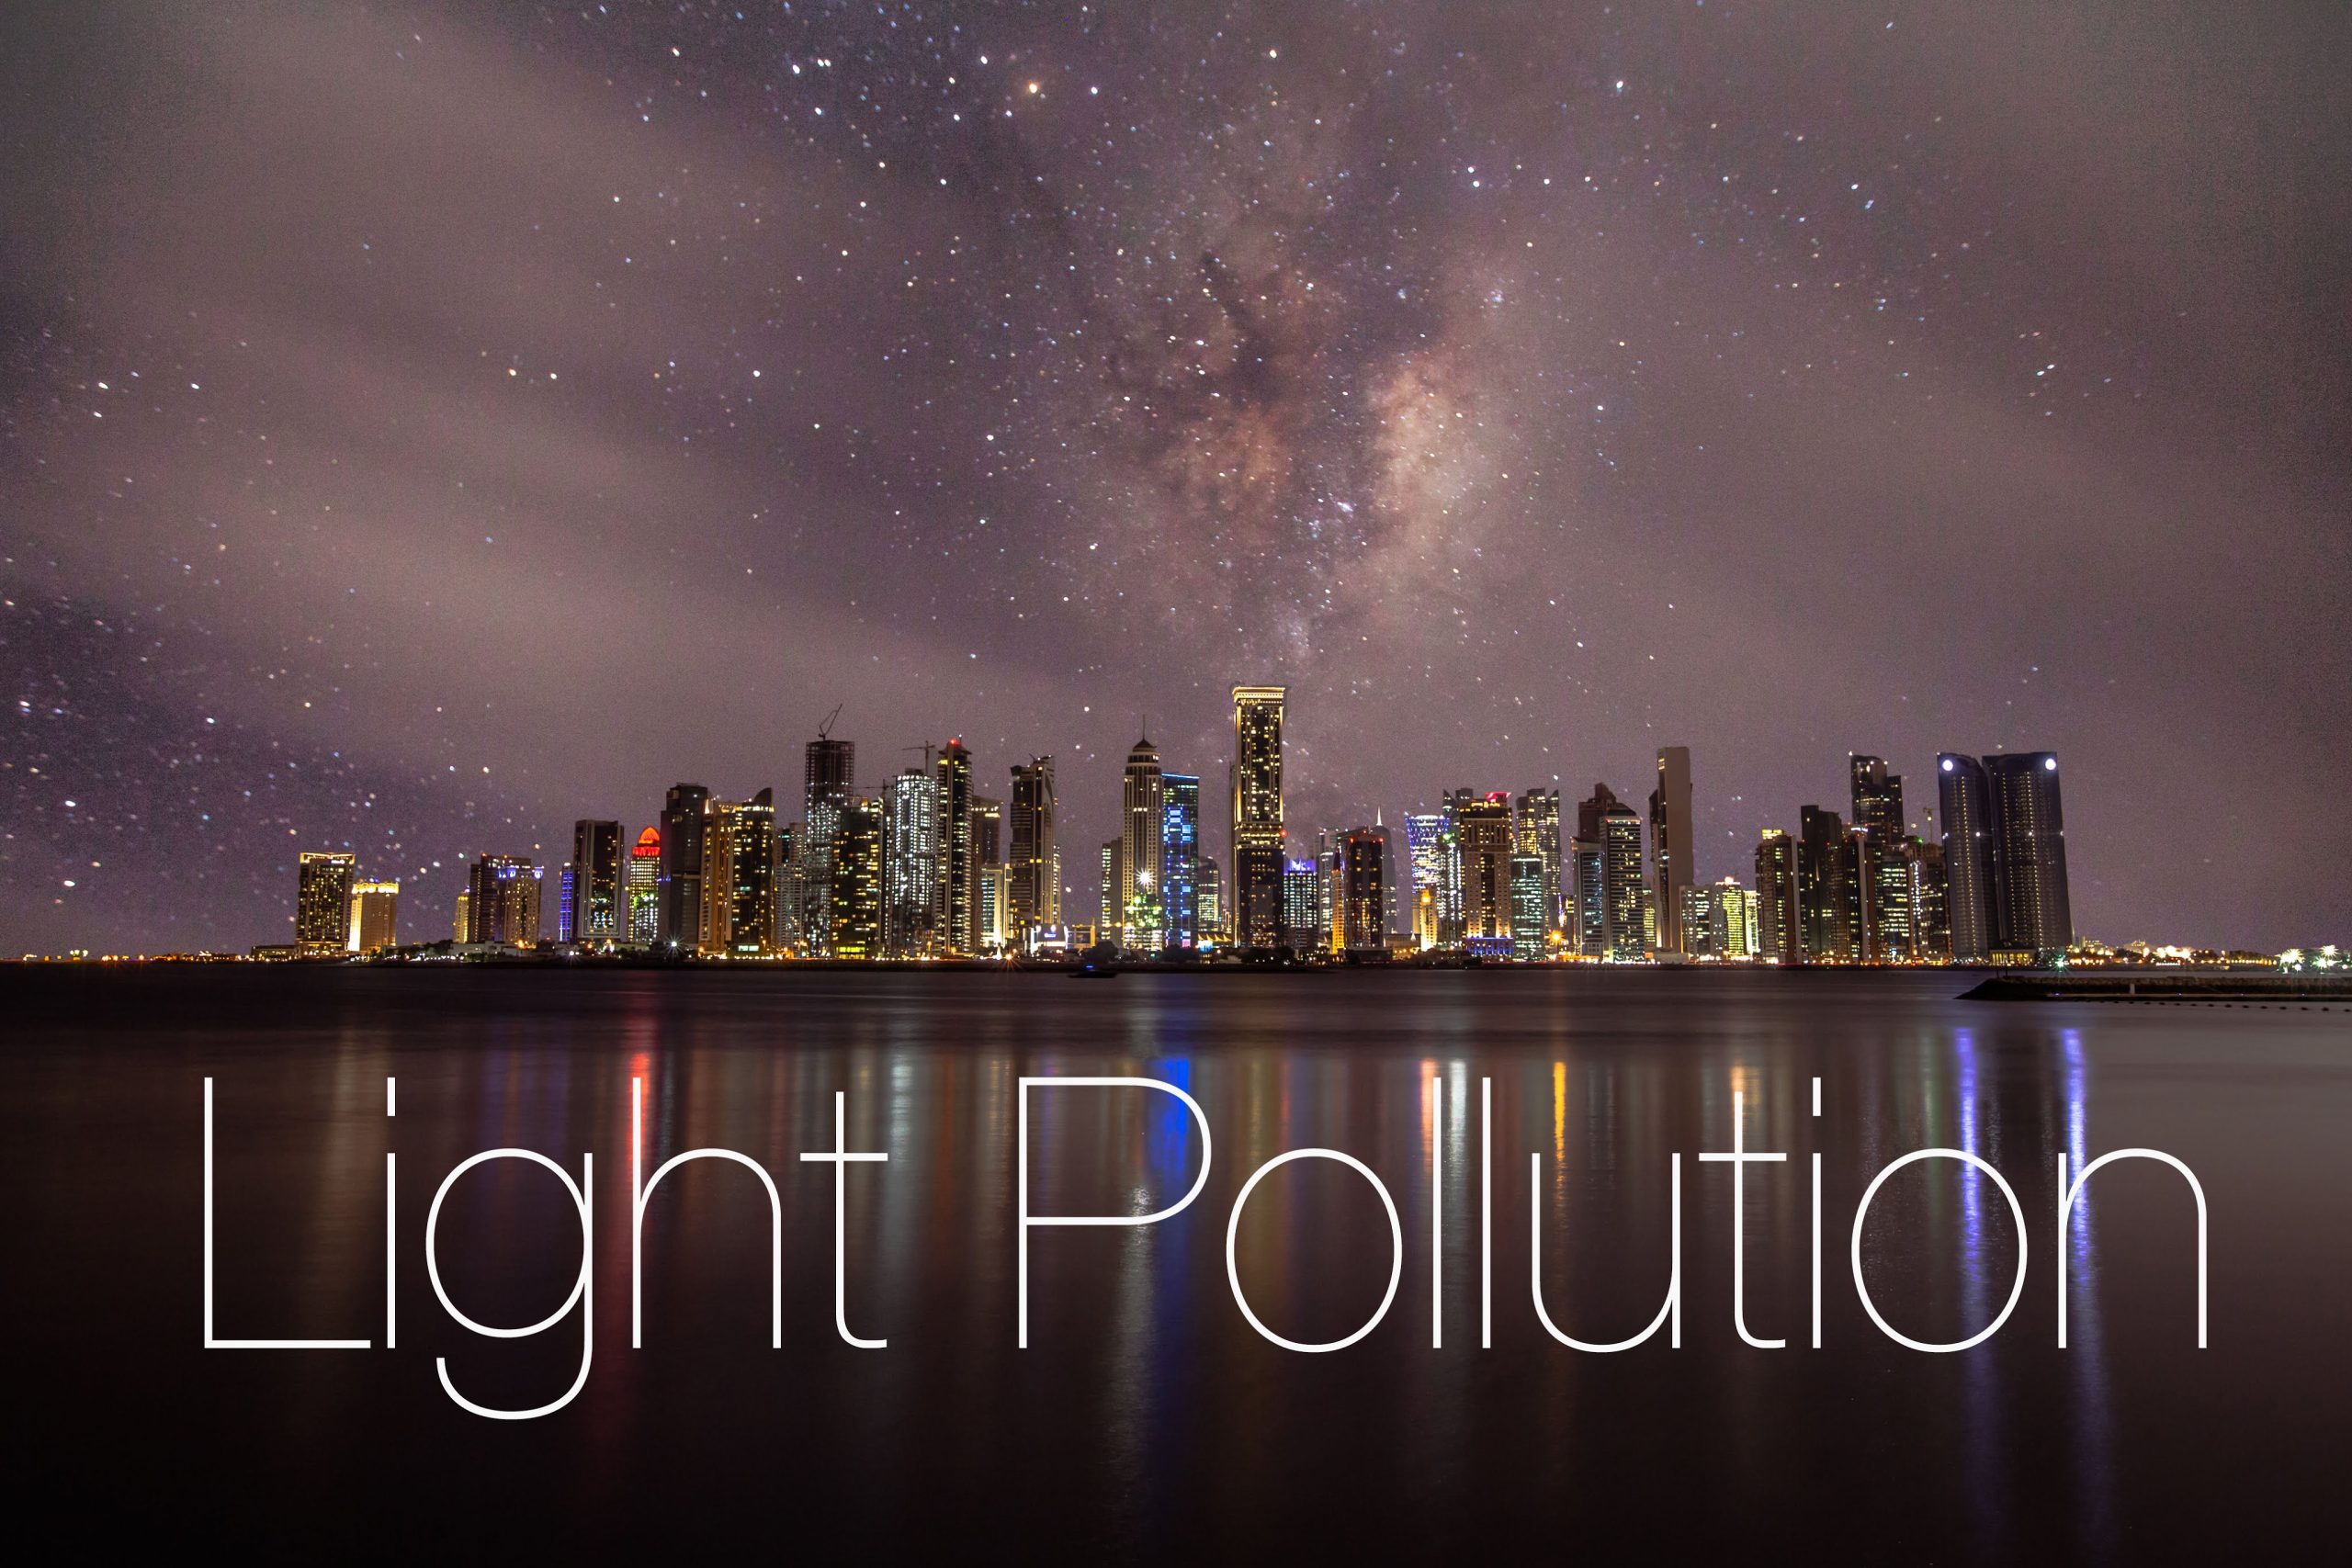 Βίντεο: Τα φώτα των πόλεων καταστρέφουν την θέα του νυχτερινού ουρανού